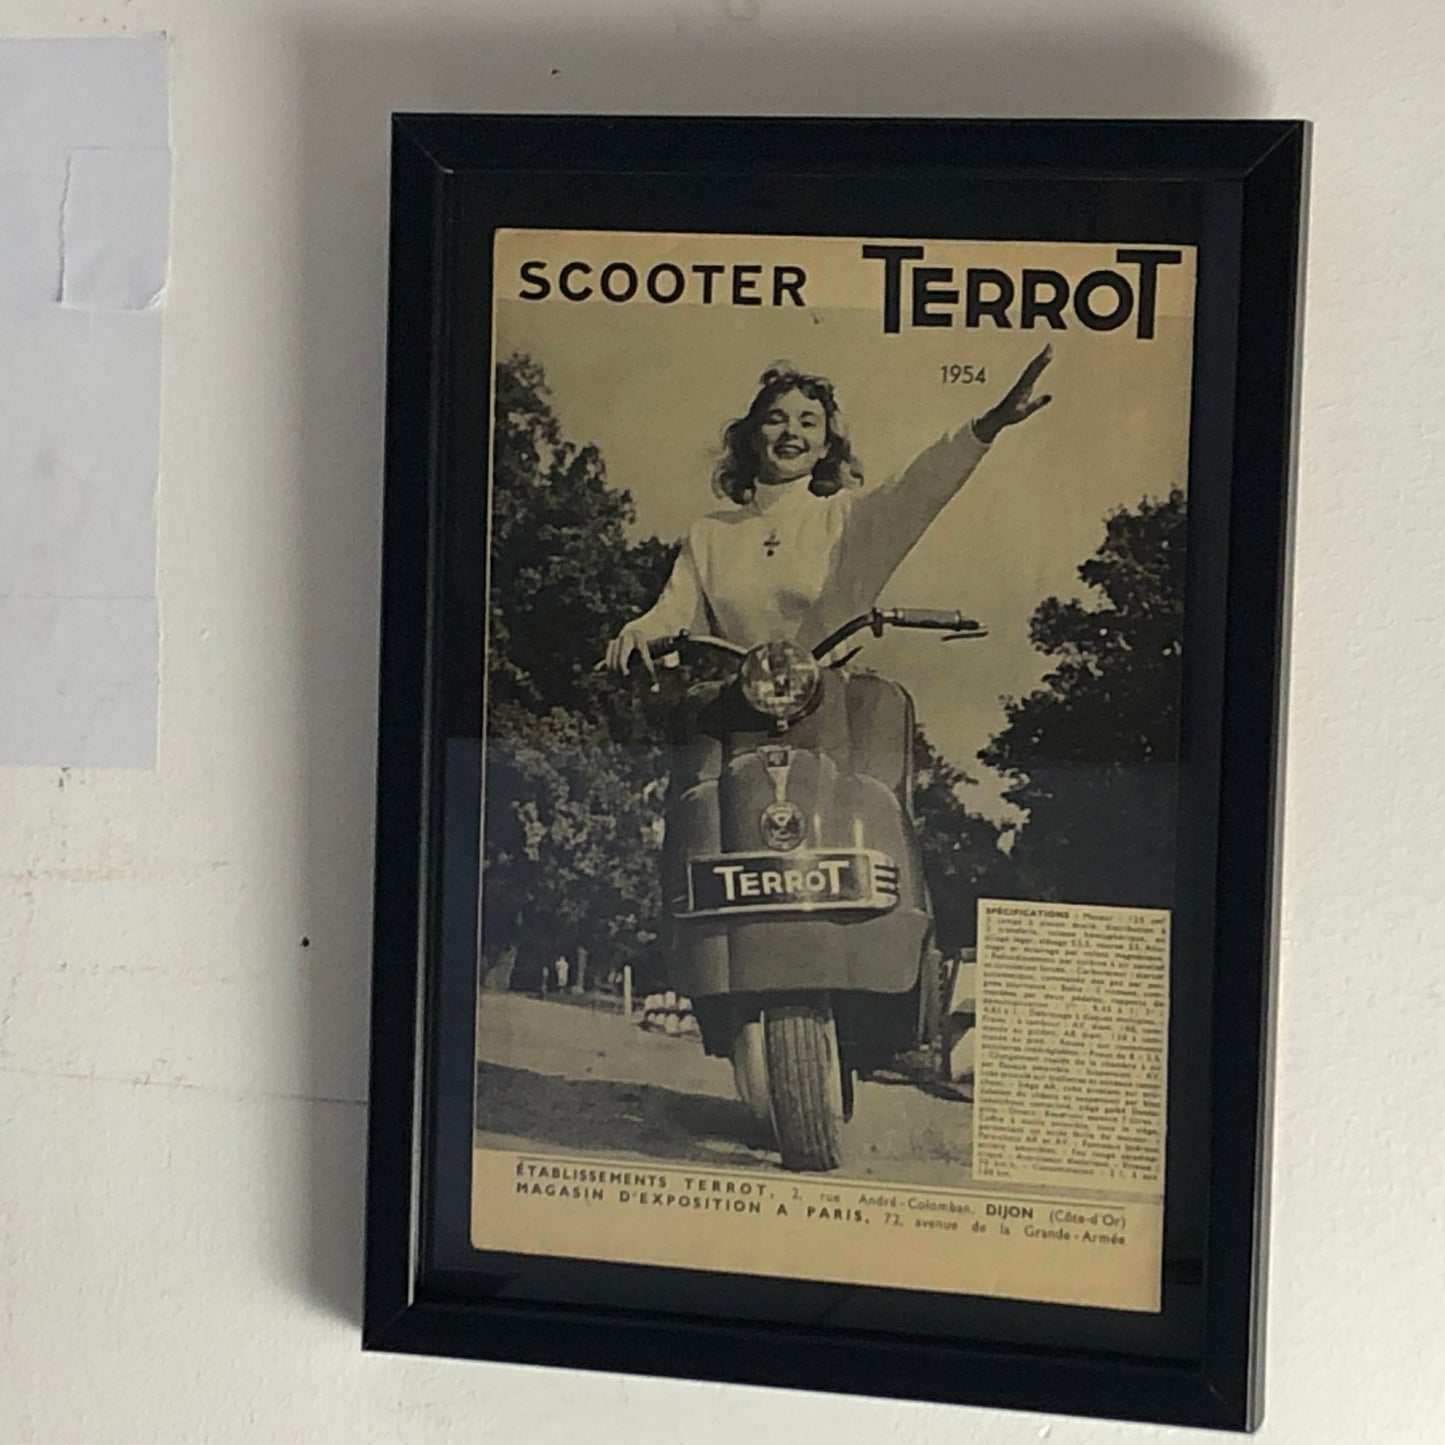 Terrot, Pubblicità Anno 1954 Scooter Terrot con Specifiche Tecniche in Francese